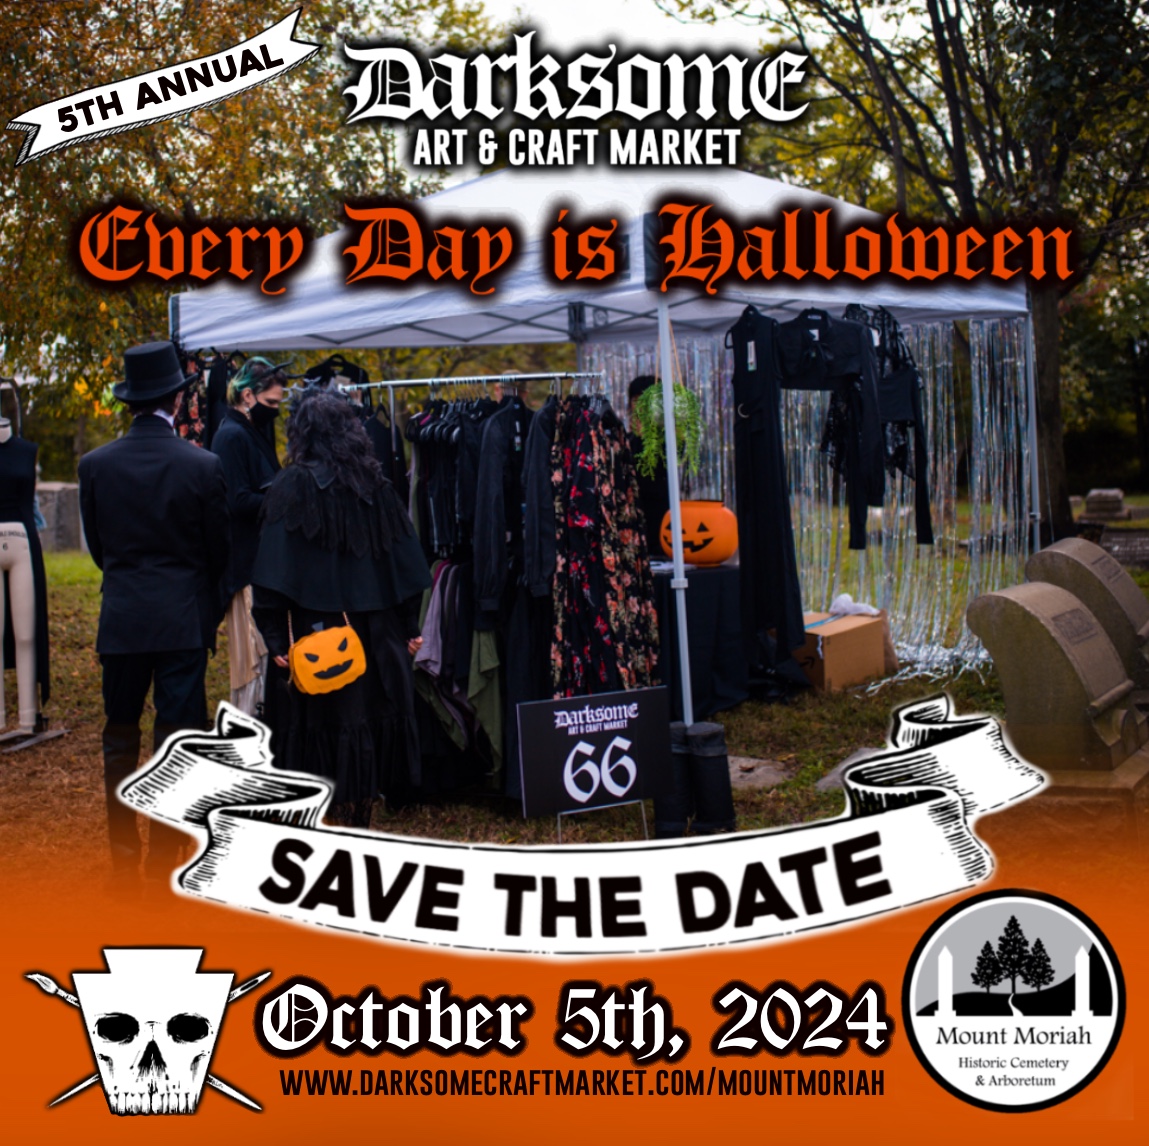 Darksome Art & Craft Market: Every Days is Halloween